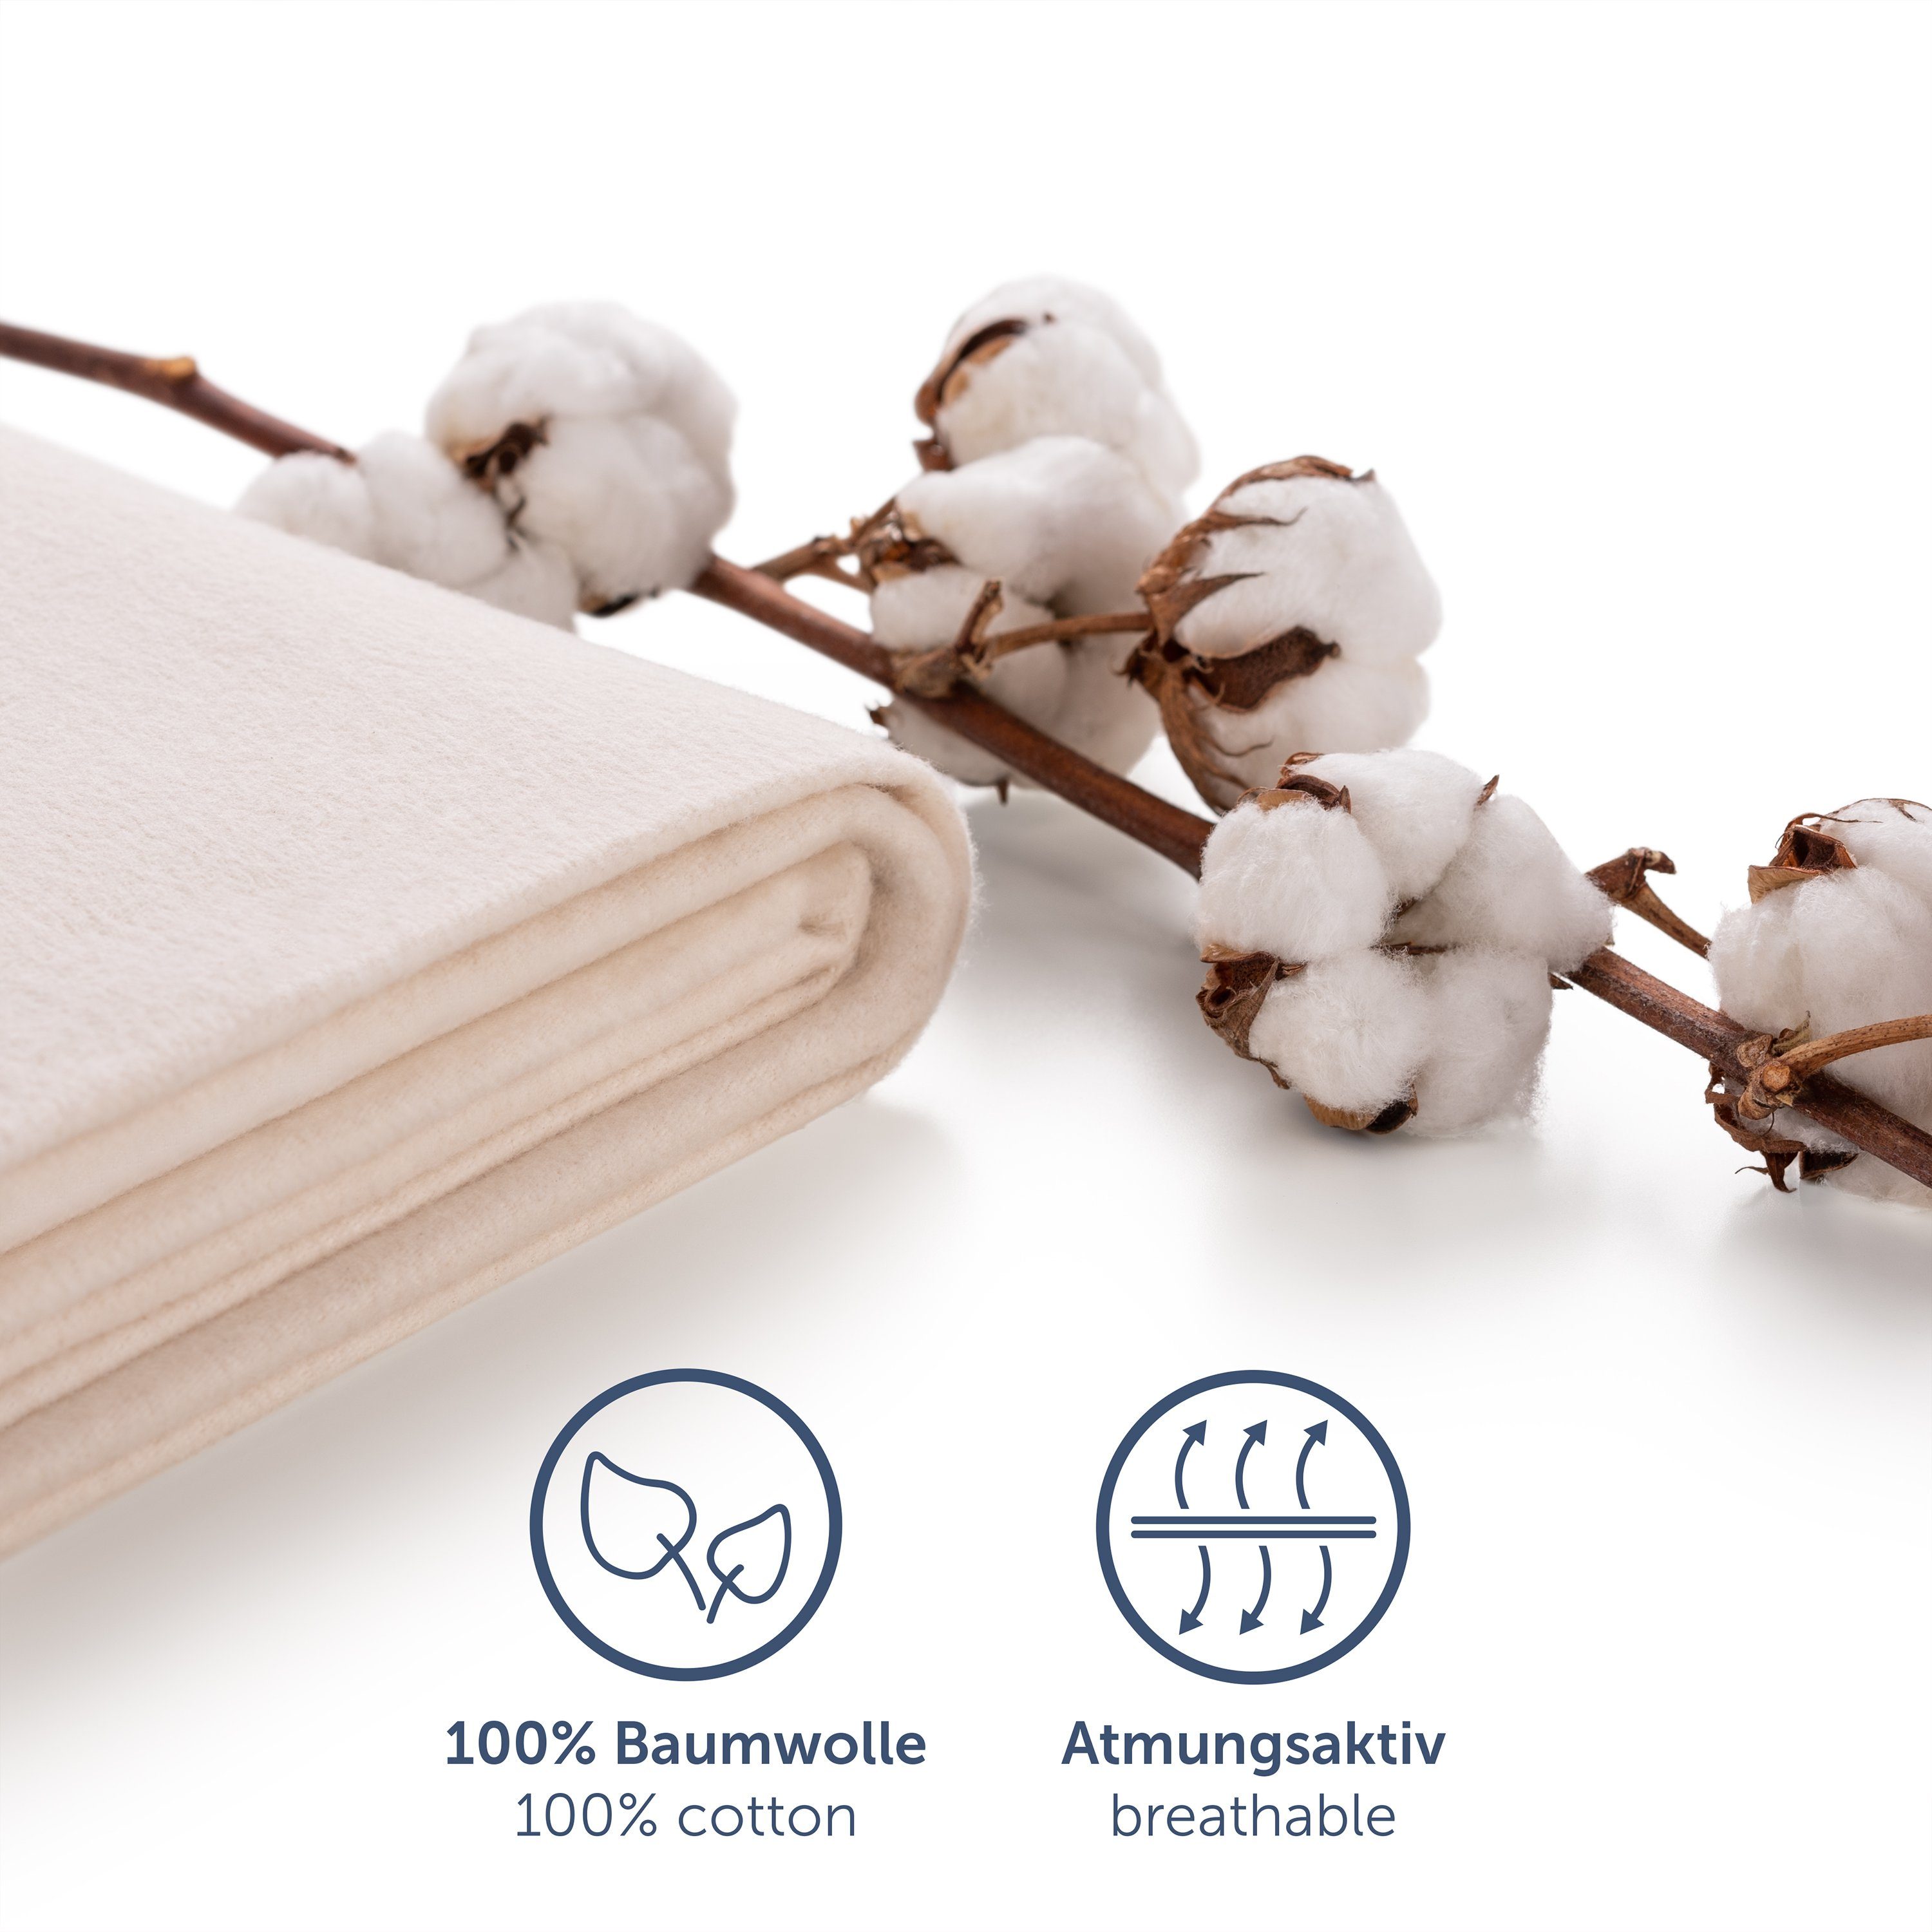 Premium Nature Zertifizierte Blumtal, Matratzenschoner Baumwolle, 100% Molton Blumtal Matratzenauflage Atmungsaktive Qualität